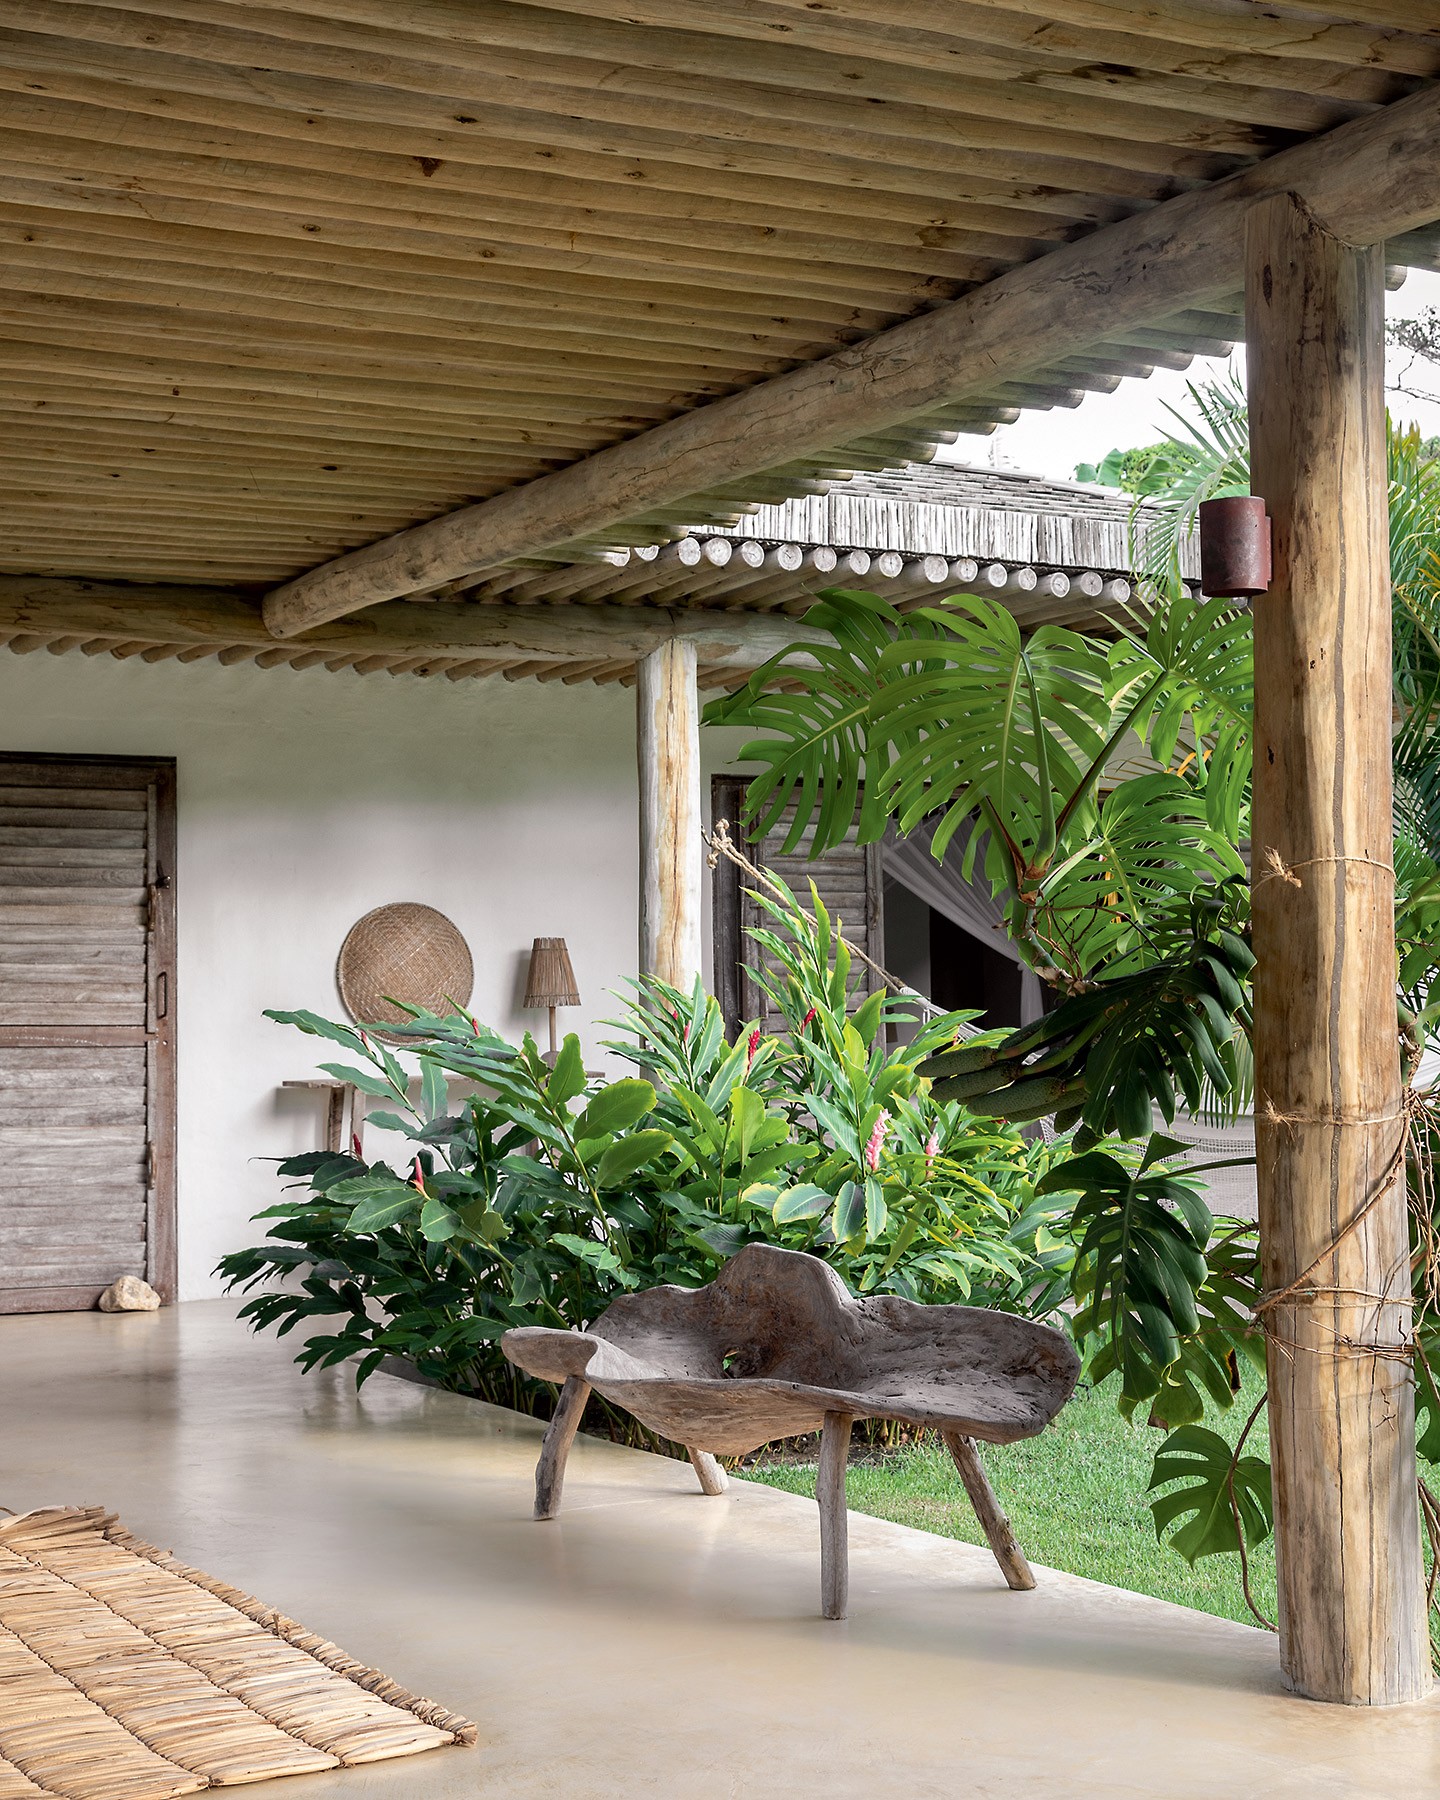 Com 660 m², esta casa em Trancoso convida ao descanso em meio à natureza (Foto: Ruy Teixeira)